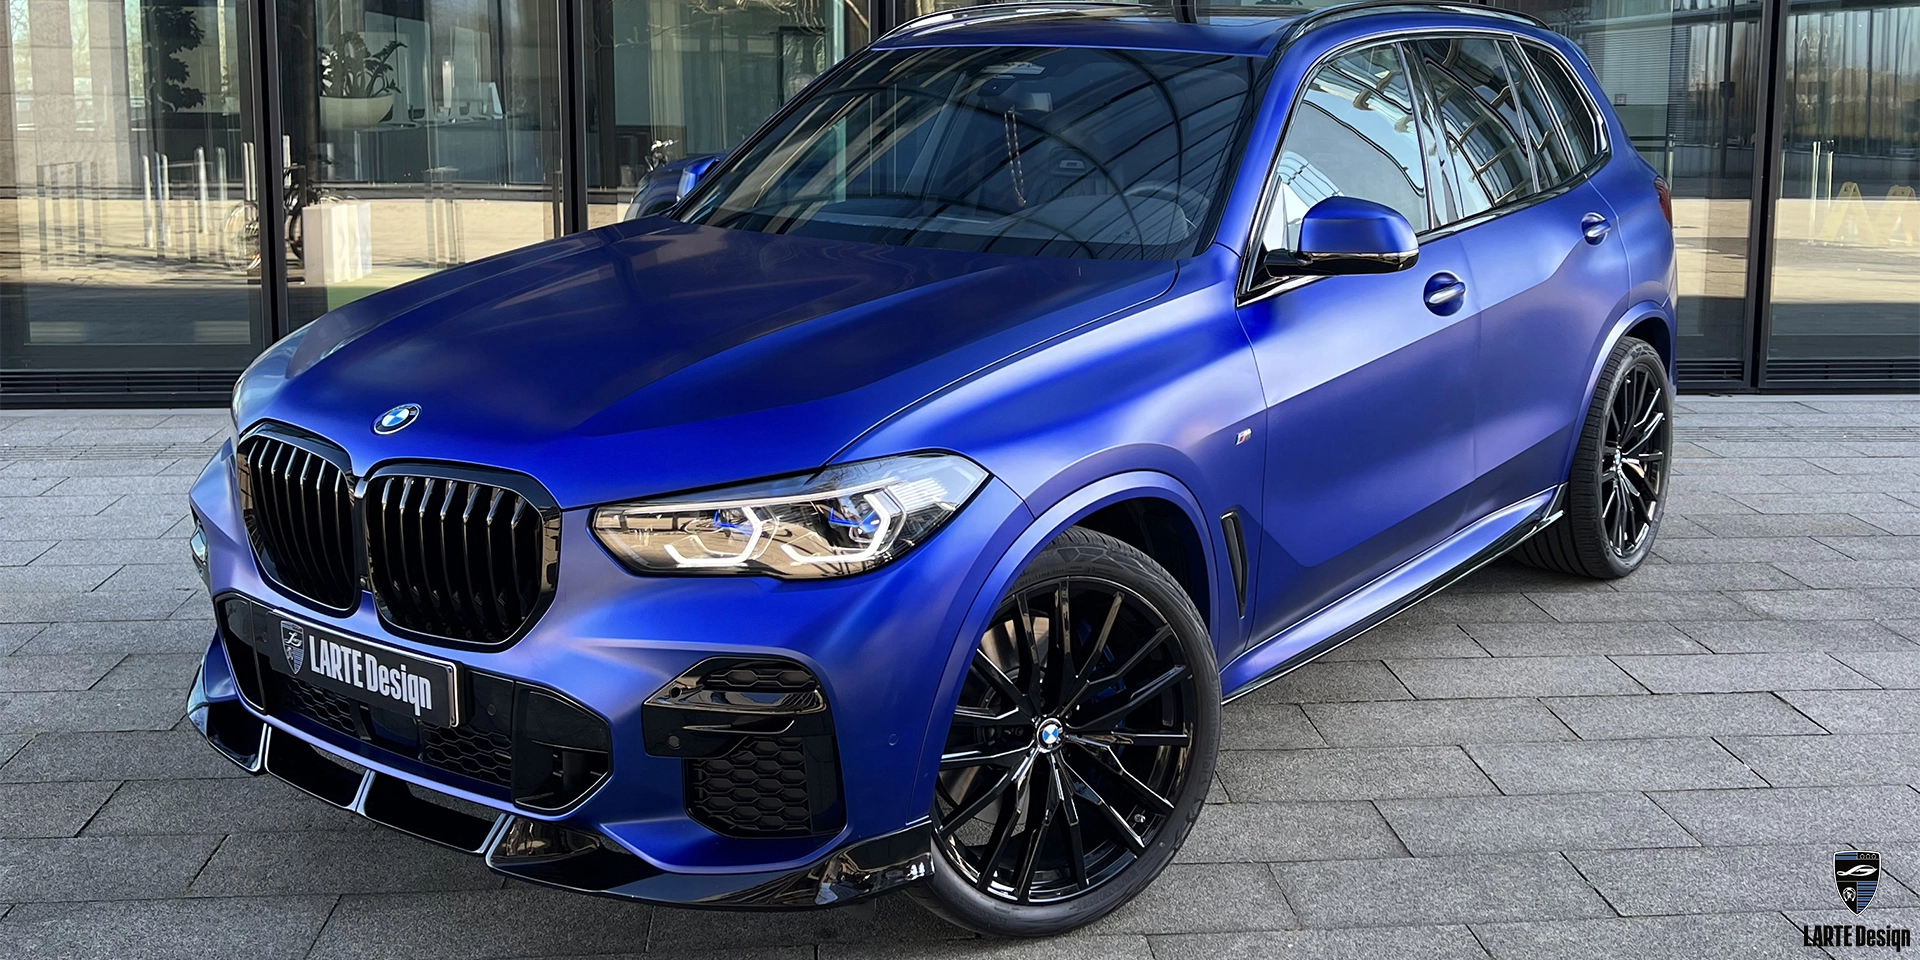 Installation custom body tuning for BMW X5 M sport G05 Phytonic Blue Metallic  2020